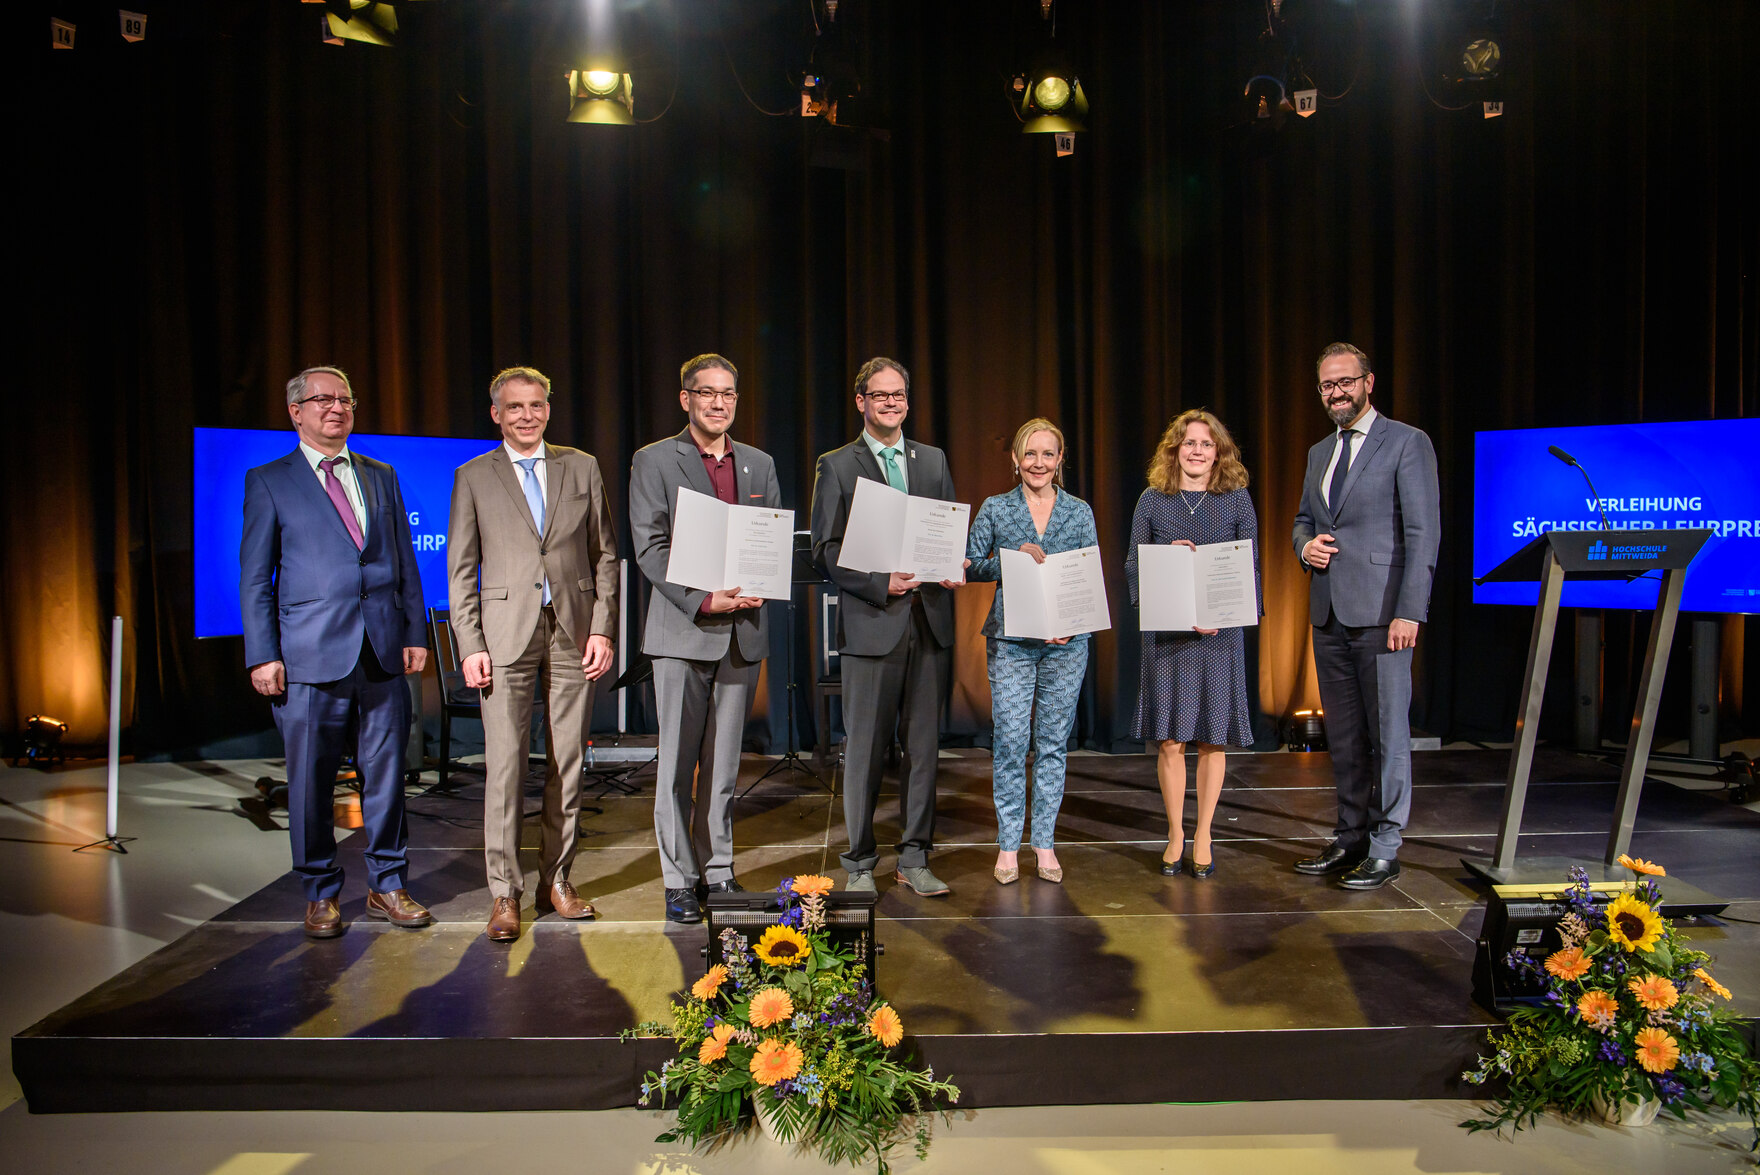 Gäste bei der Verleihung des Sächsischen Lehrpreises am 3. Juni 2020